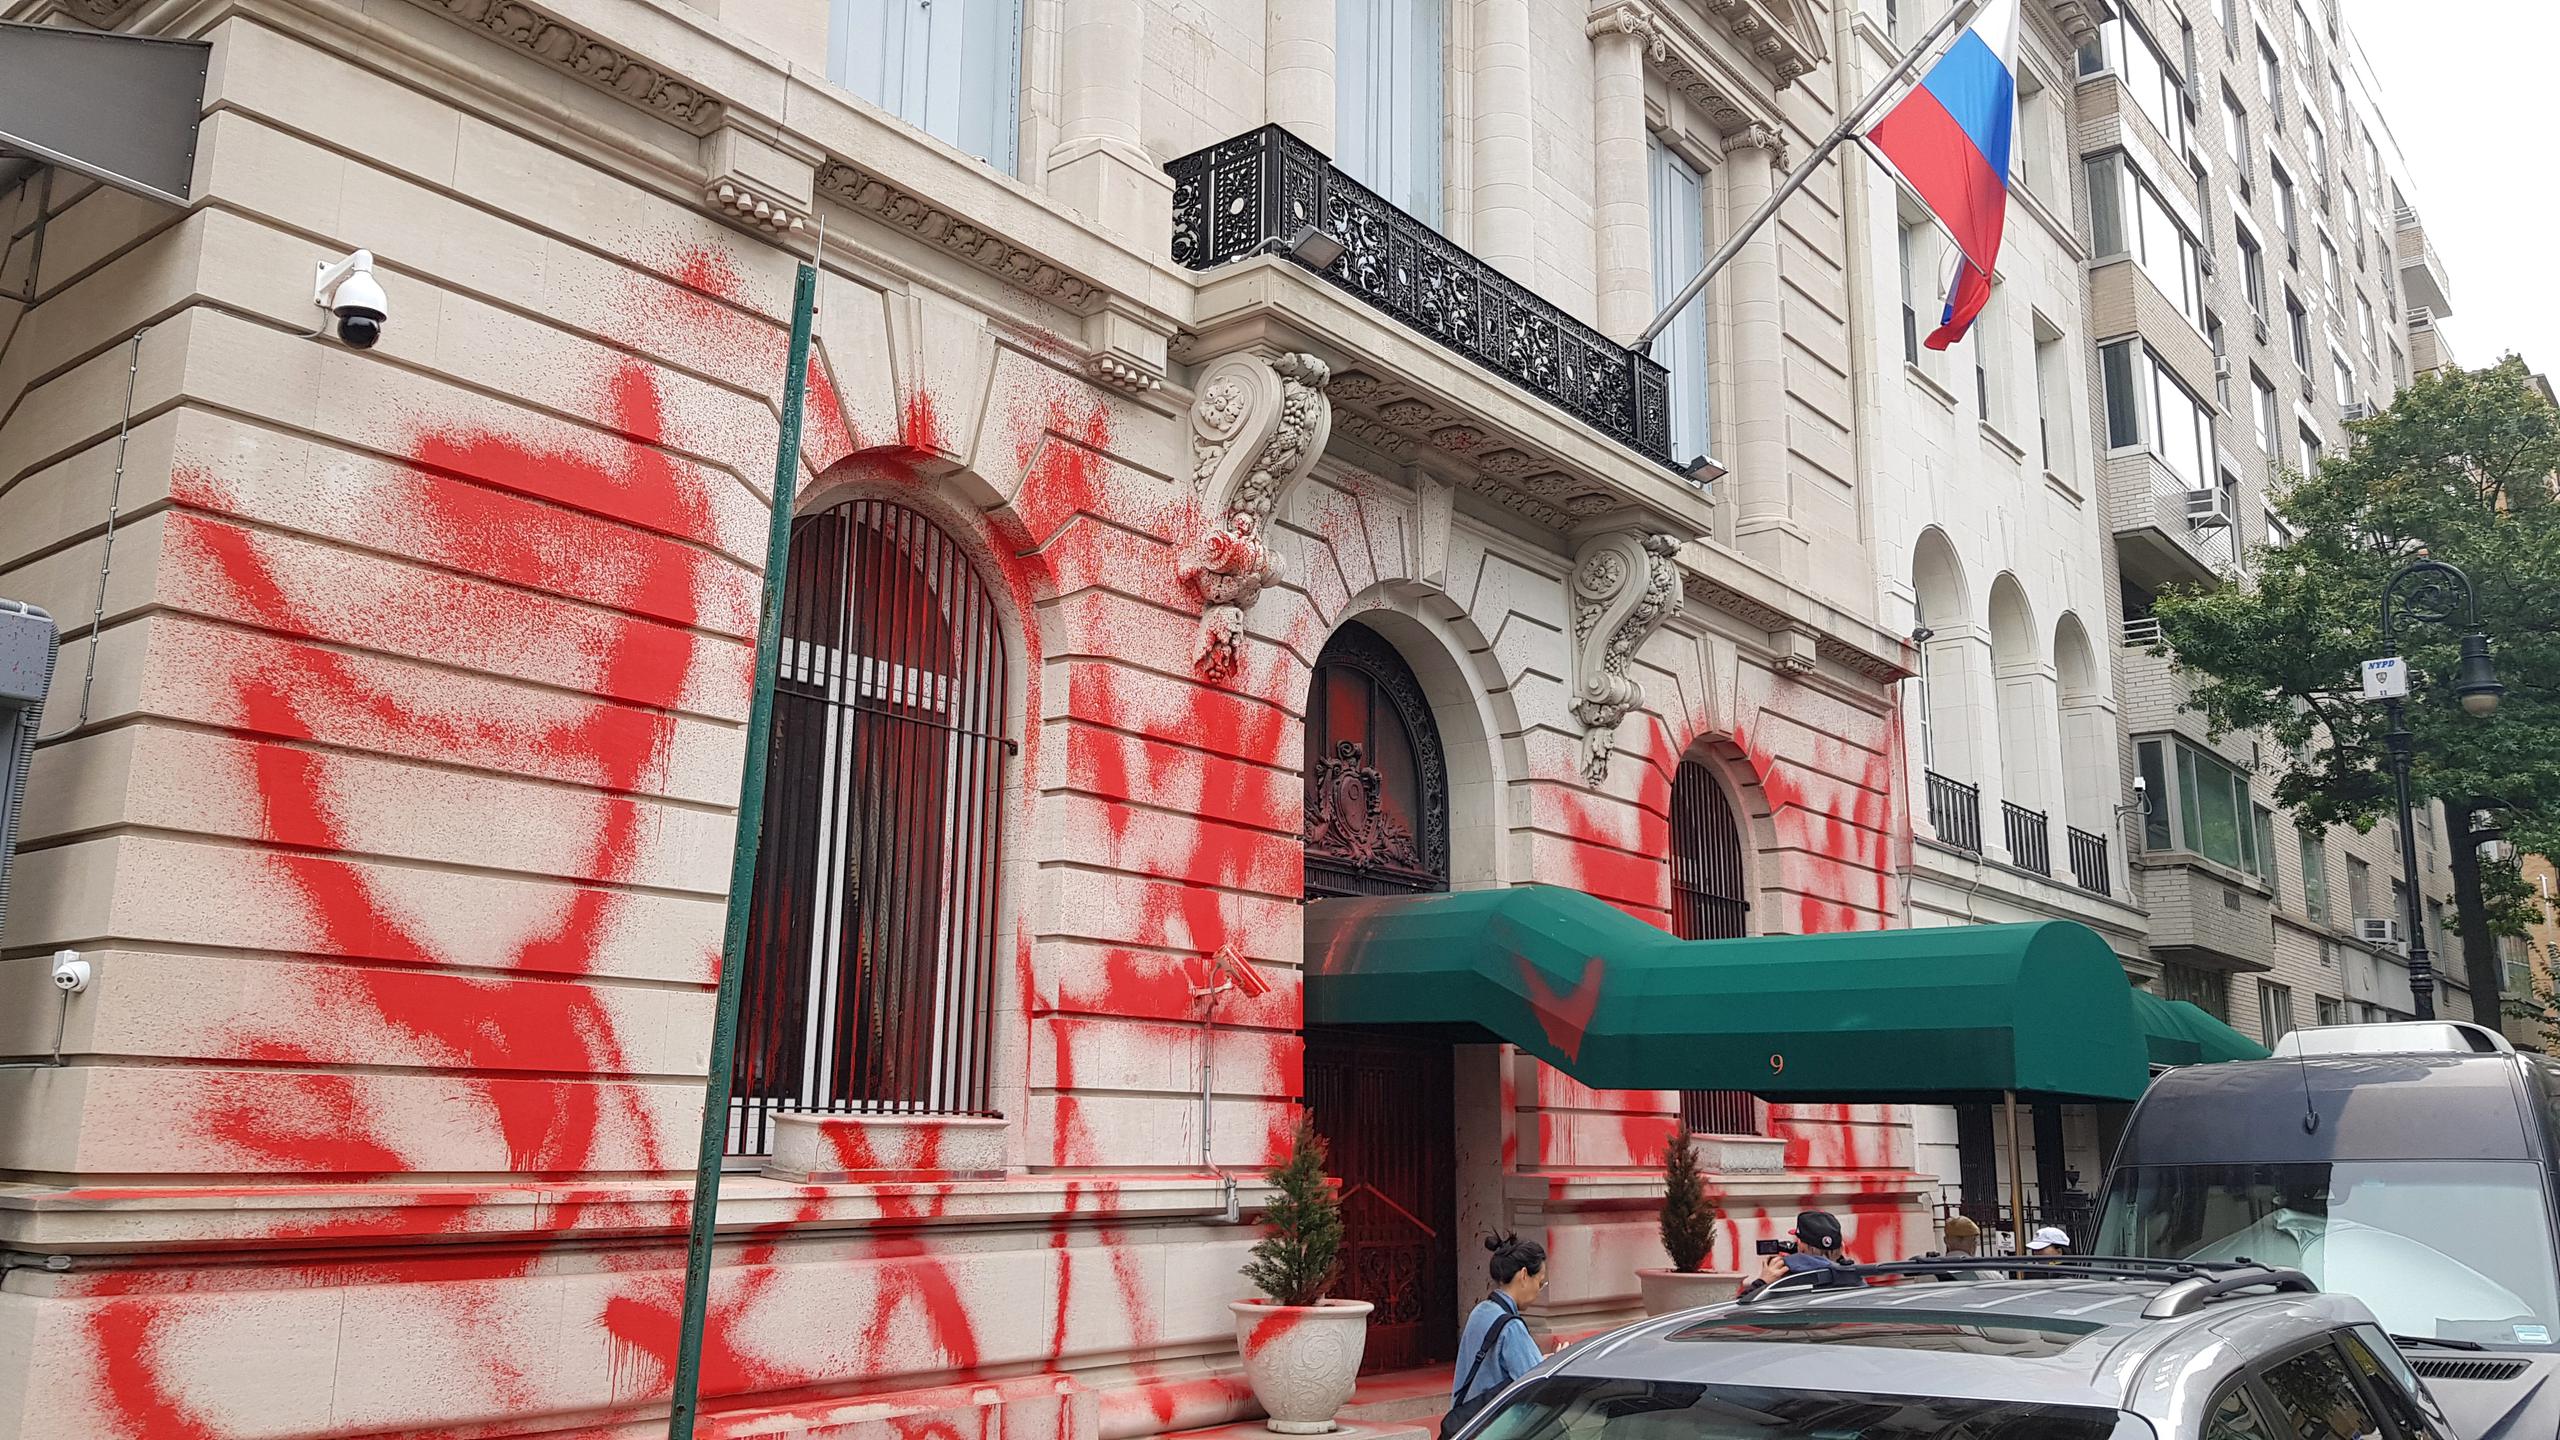 Fotografía de la fachada del consulado de Rusia vandalizada con pintura roja, hoy, en Nueva York.